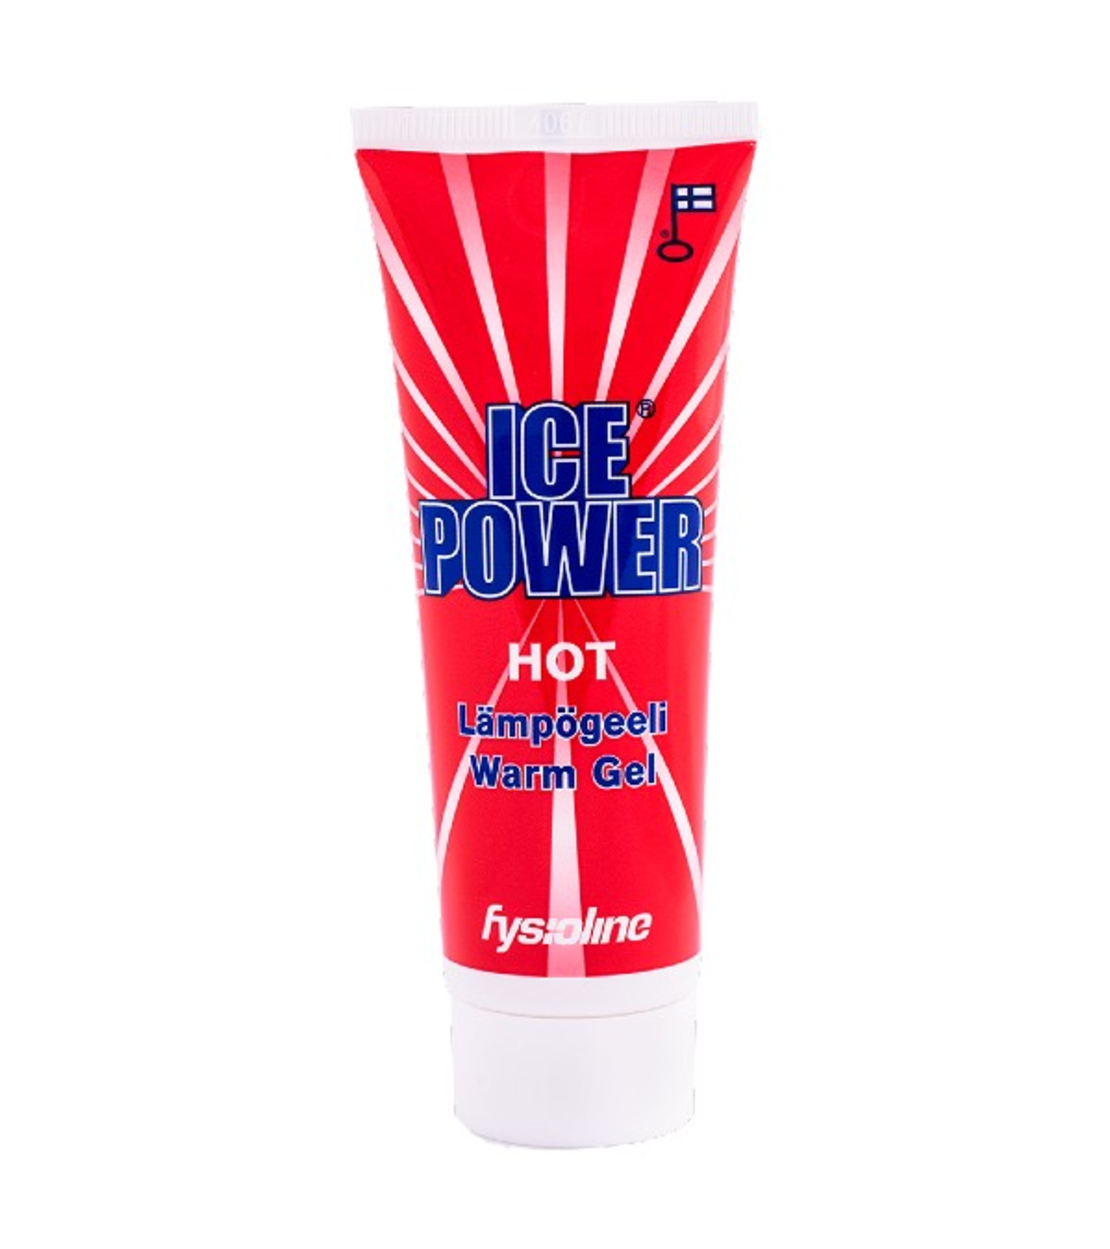 ICE POWER HOT